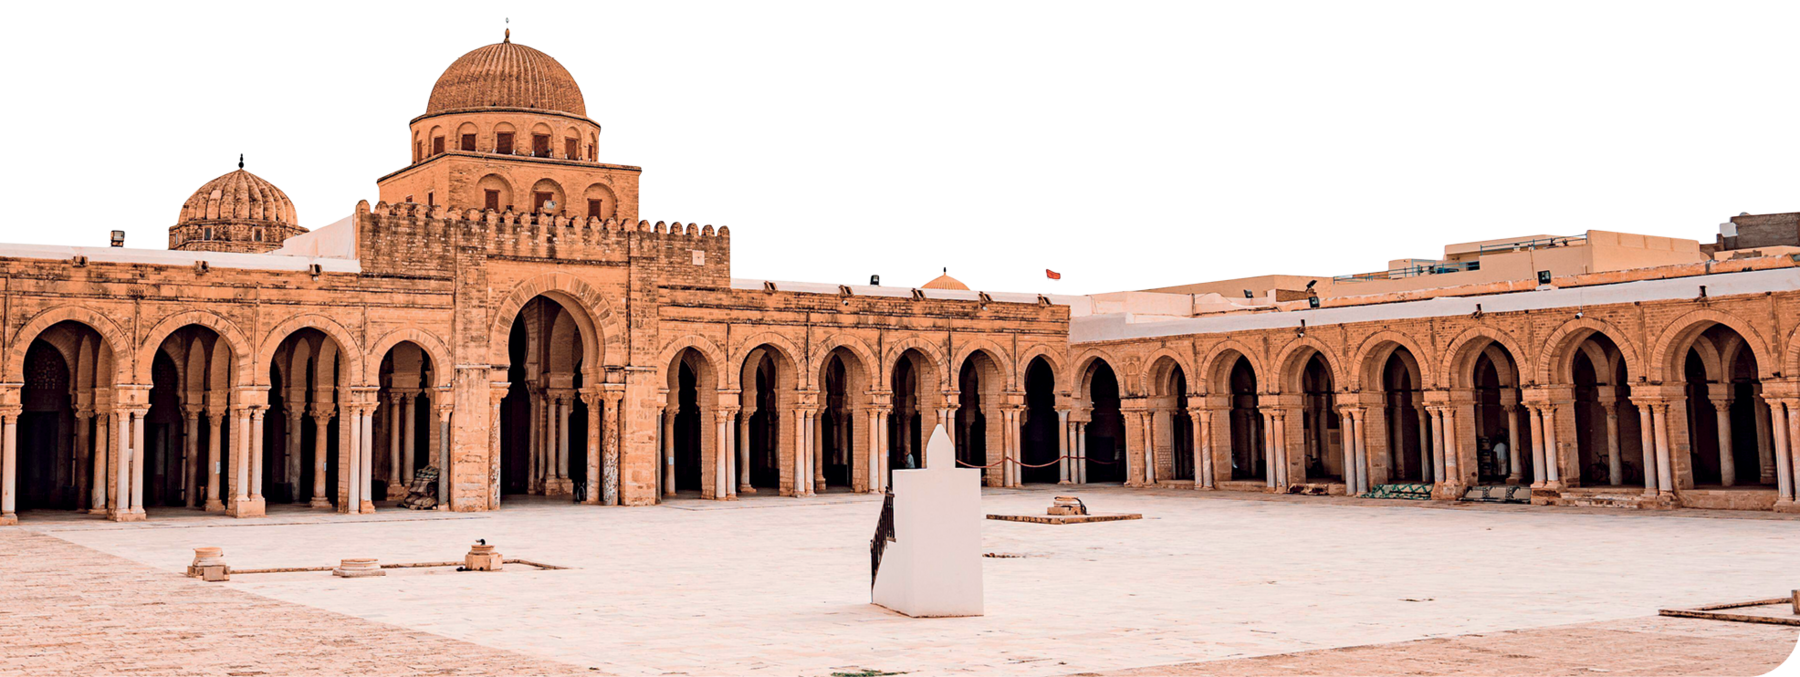 Fotografia. Fachada de mesquita, composta por paredes com diversas colunas e arcos. Há duas cúpulas pequenas no teto. Na frente, um pátio com um bloco branco no centro.